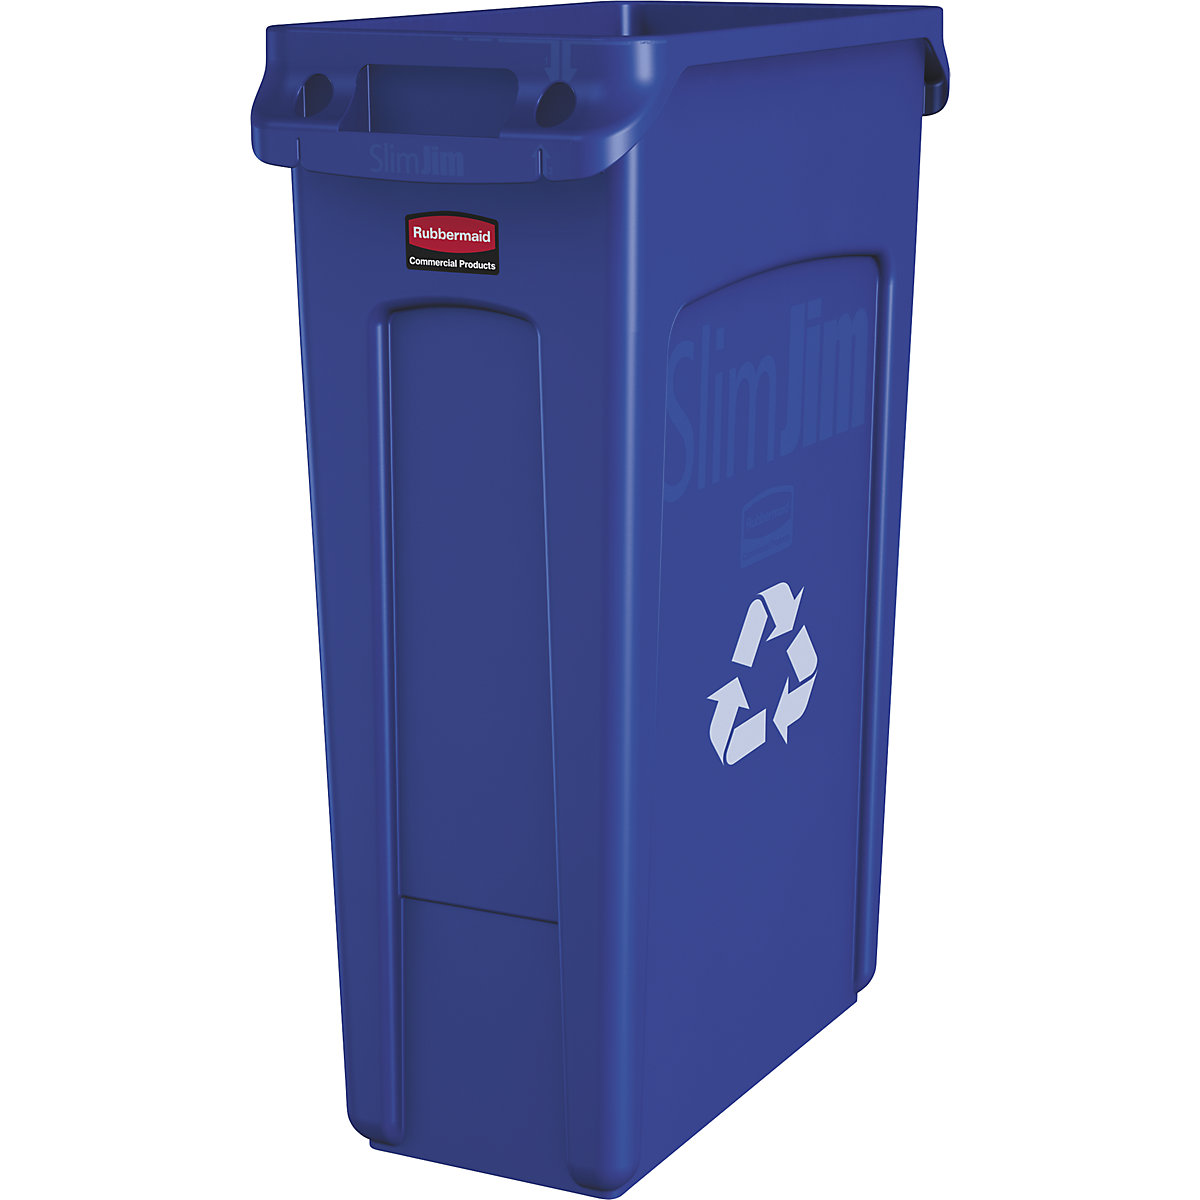 Verzamelaar voor kringloopmateriaal/afvalbak SLIM JIM® – Rubbermaid, volume 87 l, met ventilatiekanalen, blauw